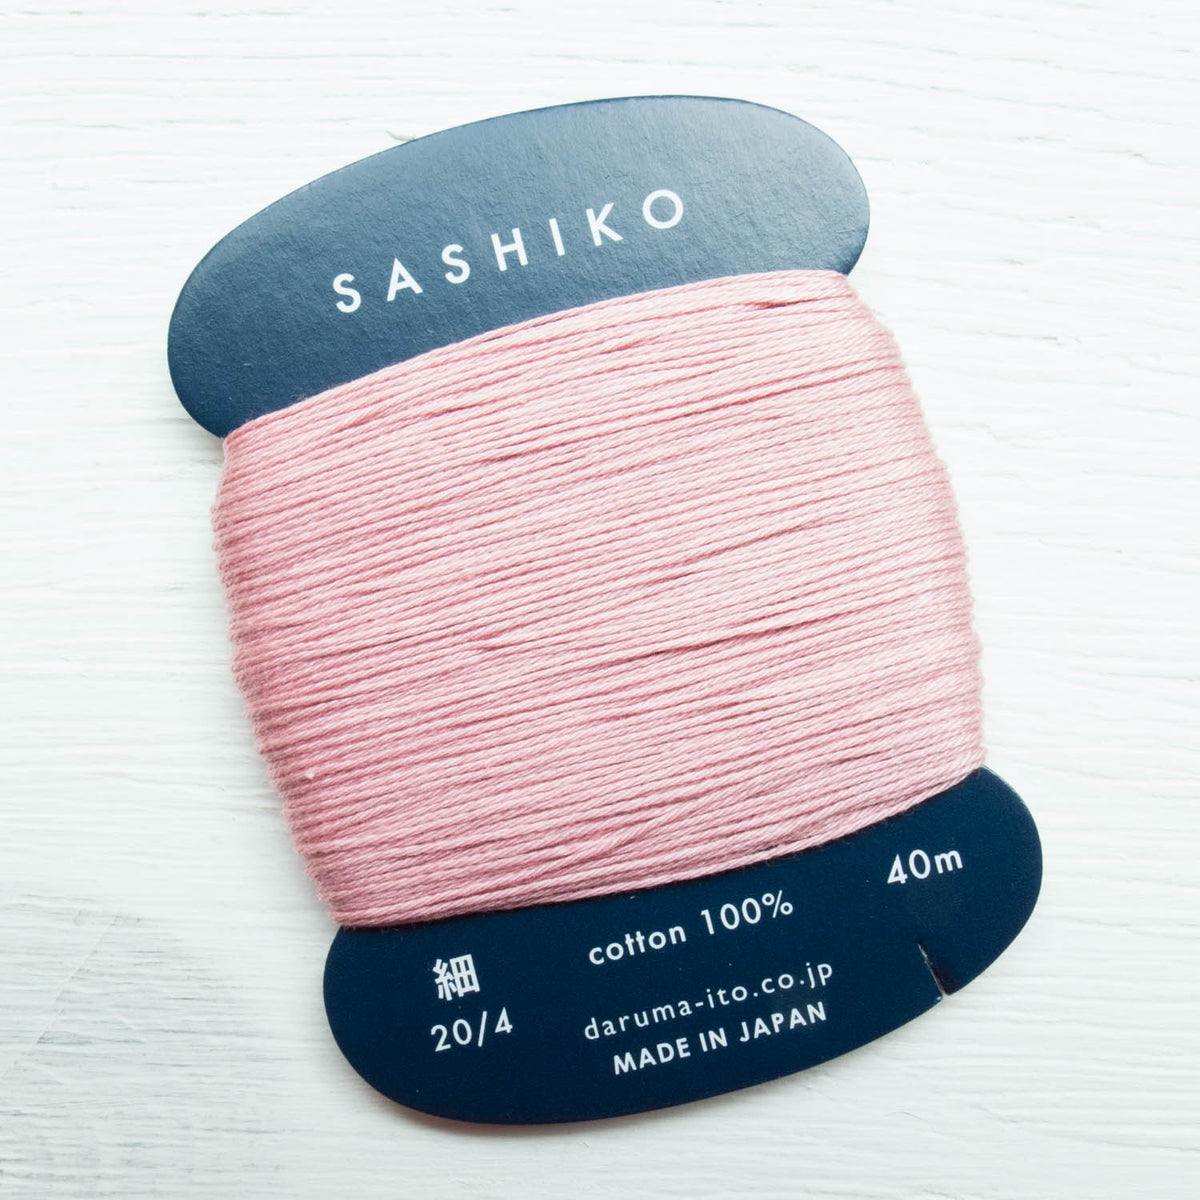 ORIM - Daruma - Sashiko Cotton Thread 20/4 - 0211 - Rose Pink